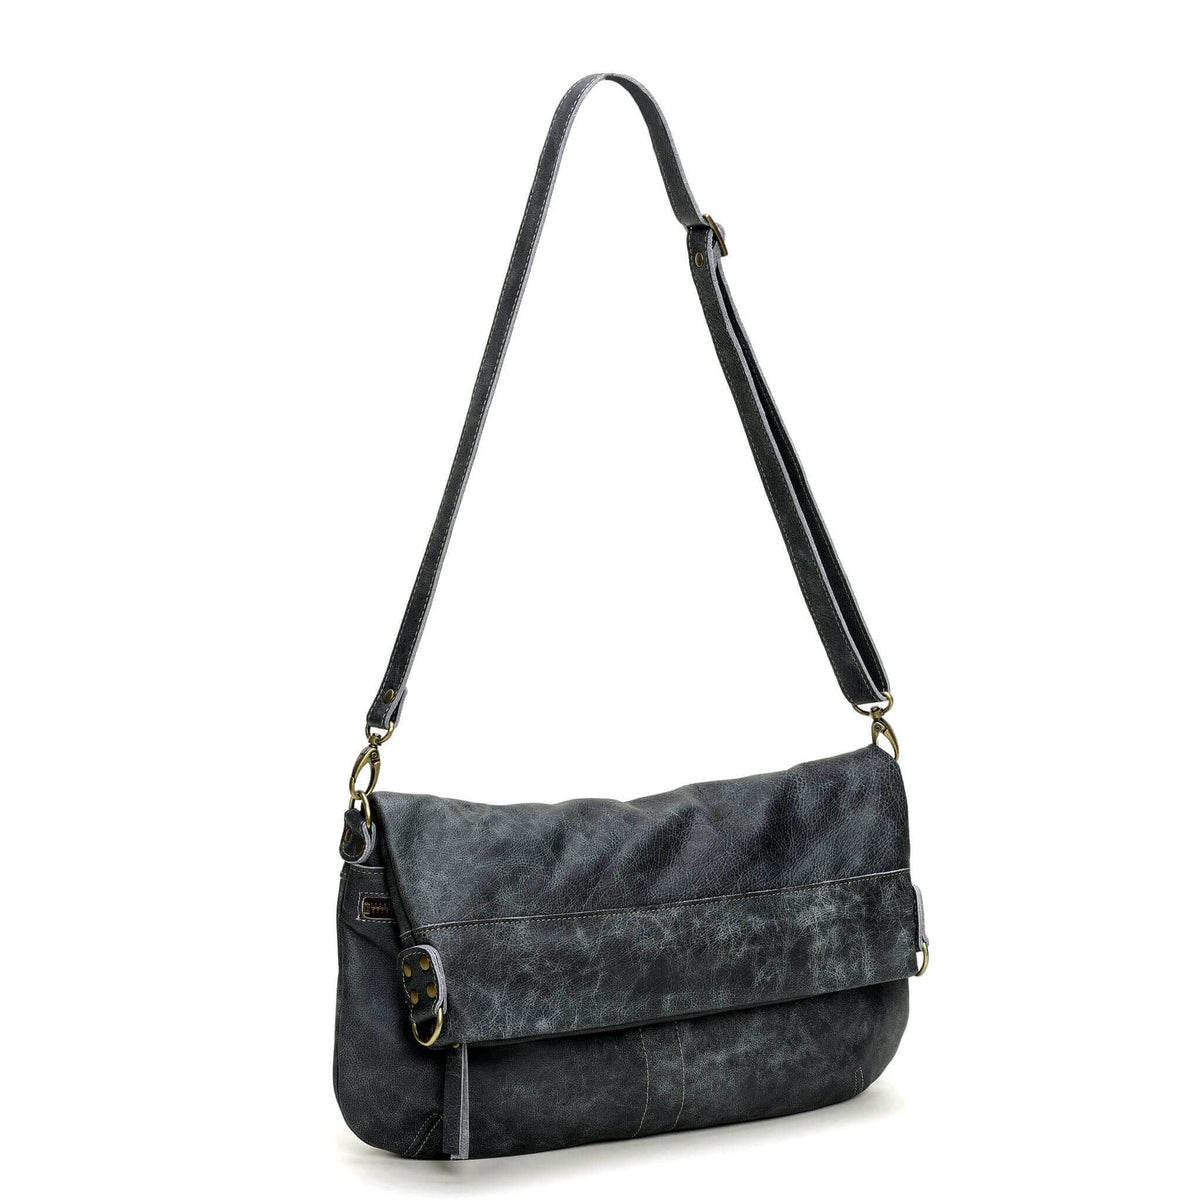 Suede Leather Bag in Blue gray. Cross Body Bag Shoulder Bag 